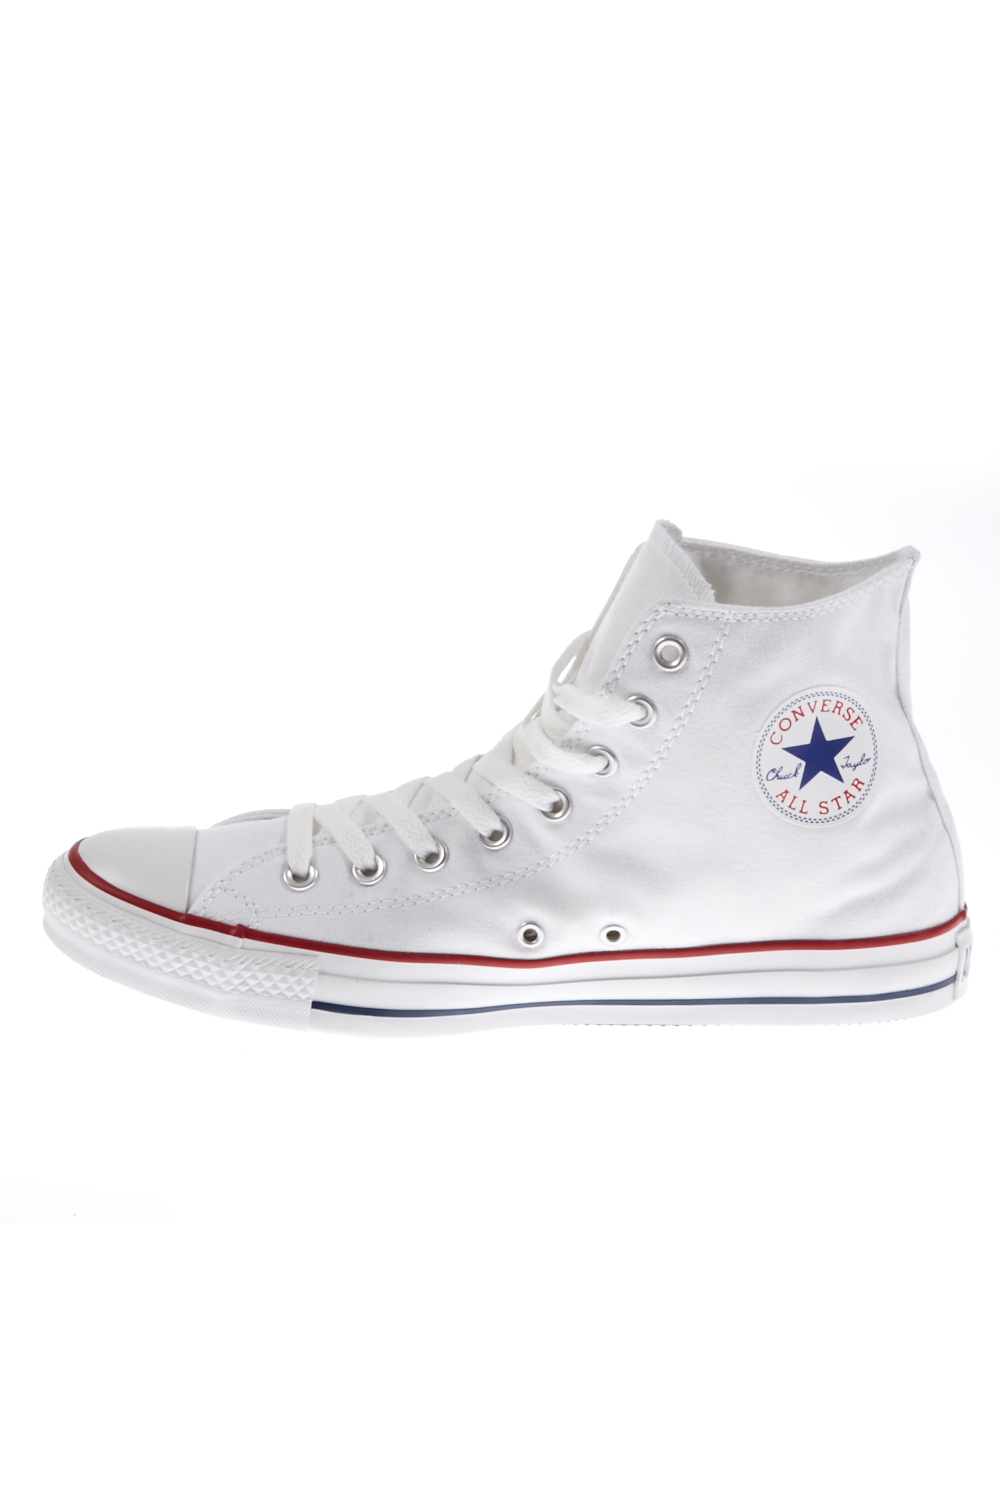 Γυναικεία/Παπούτσια/Sneakers CONVERSE - Unisex μποτάκια Chuck Taylor λευκά